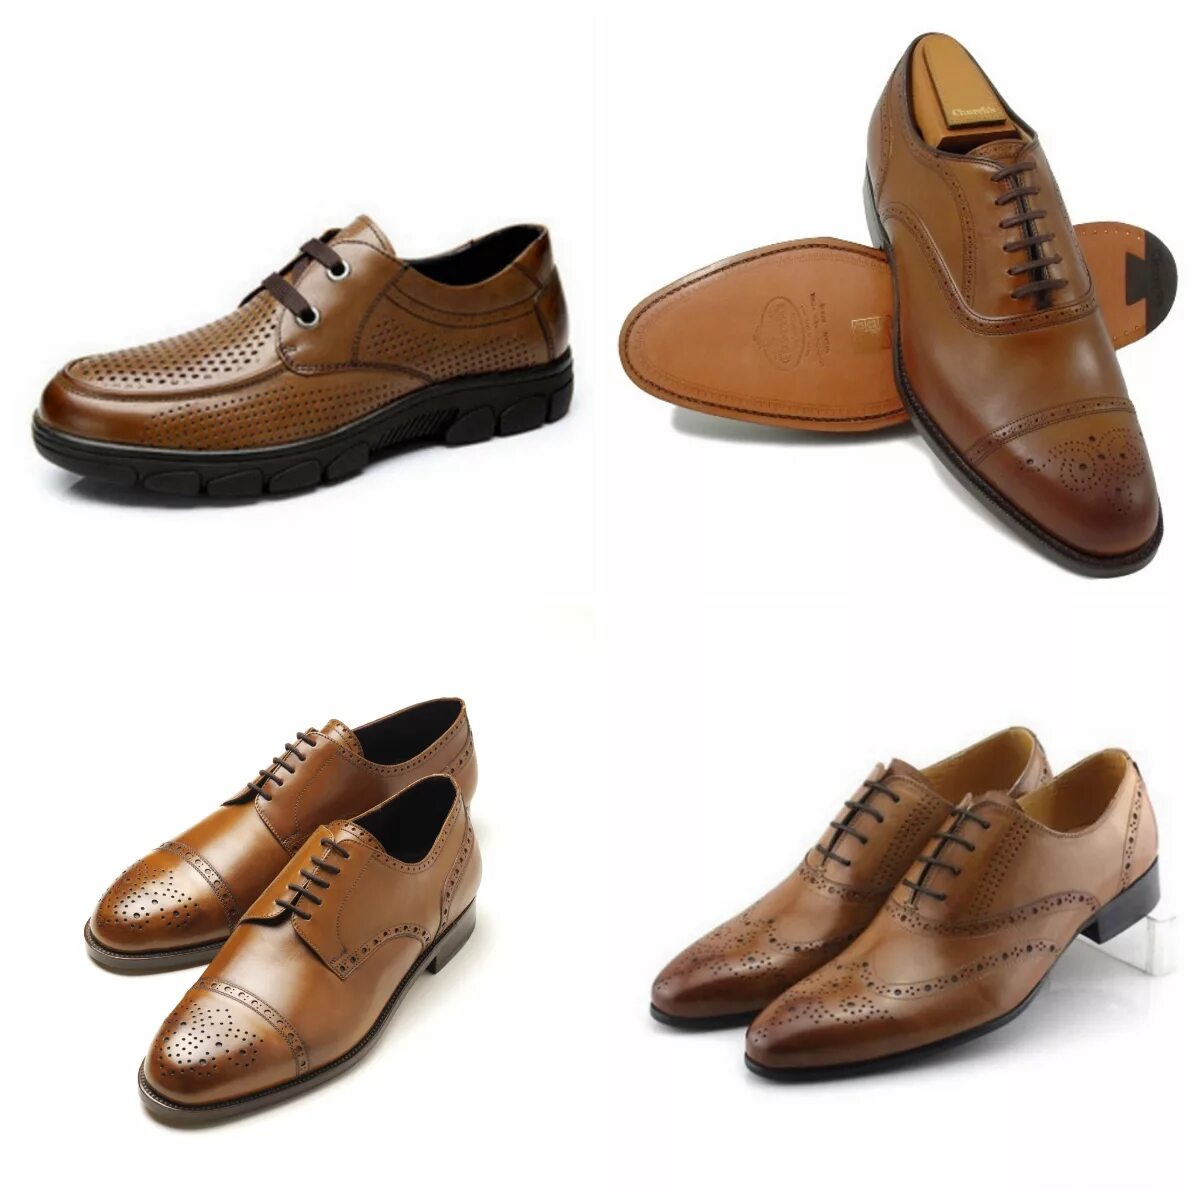 Туфли мужские agent 9159. Модные мужские туфли. Модельные туфли мужские. Модели мужской обуви